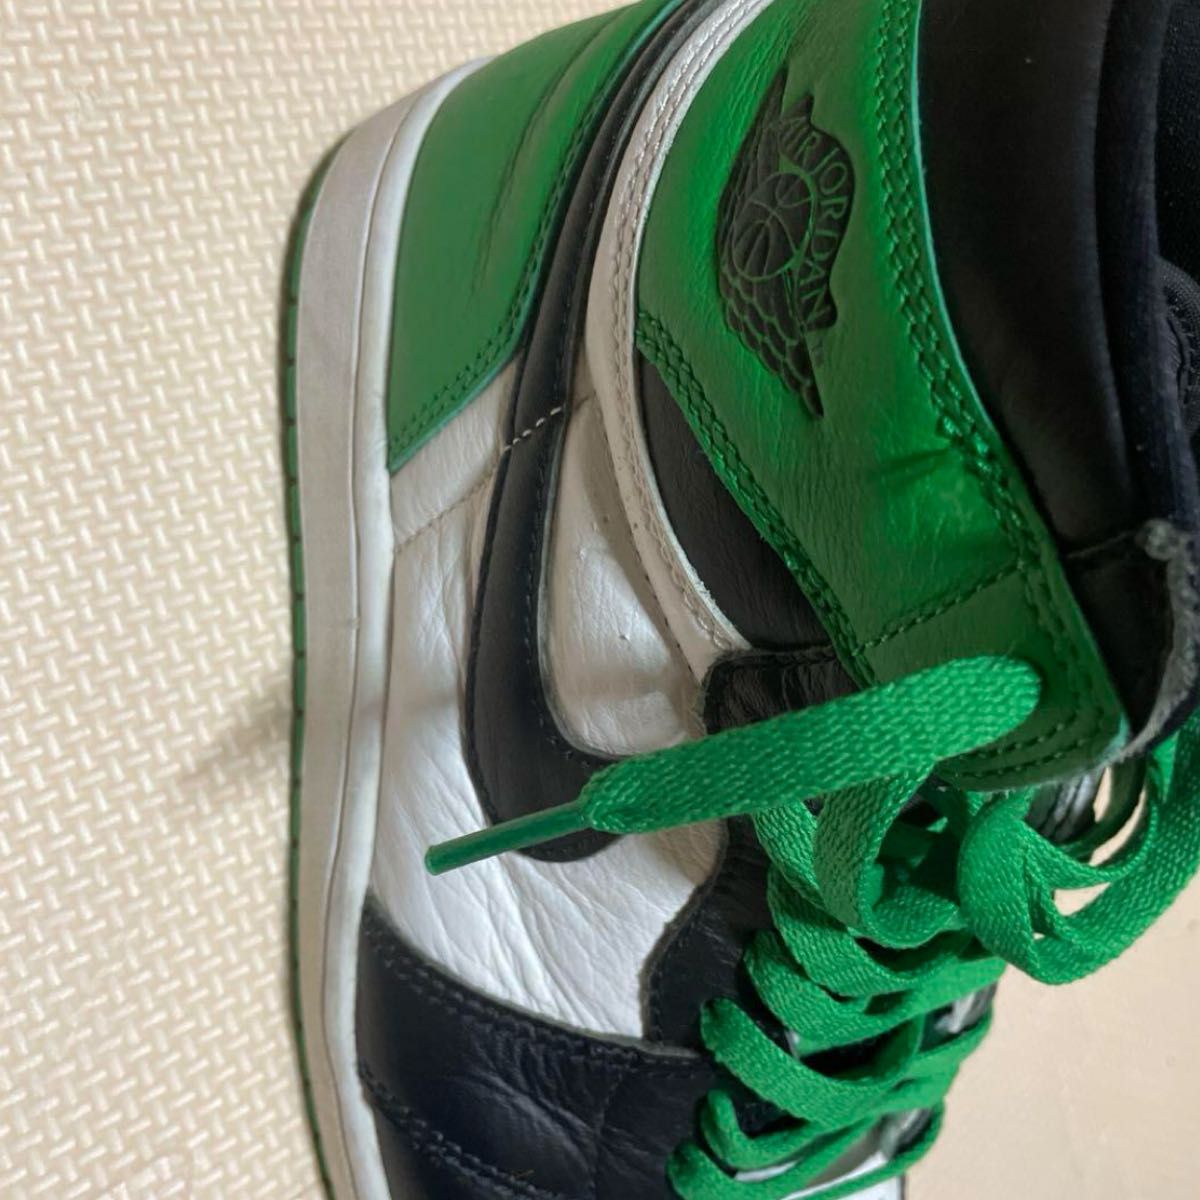 Nike Air Jordan 1 Retro High OG "Celtics/Black and Lucky Green"